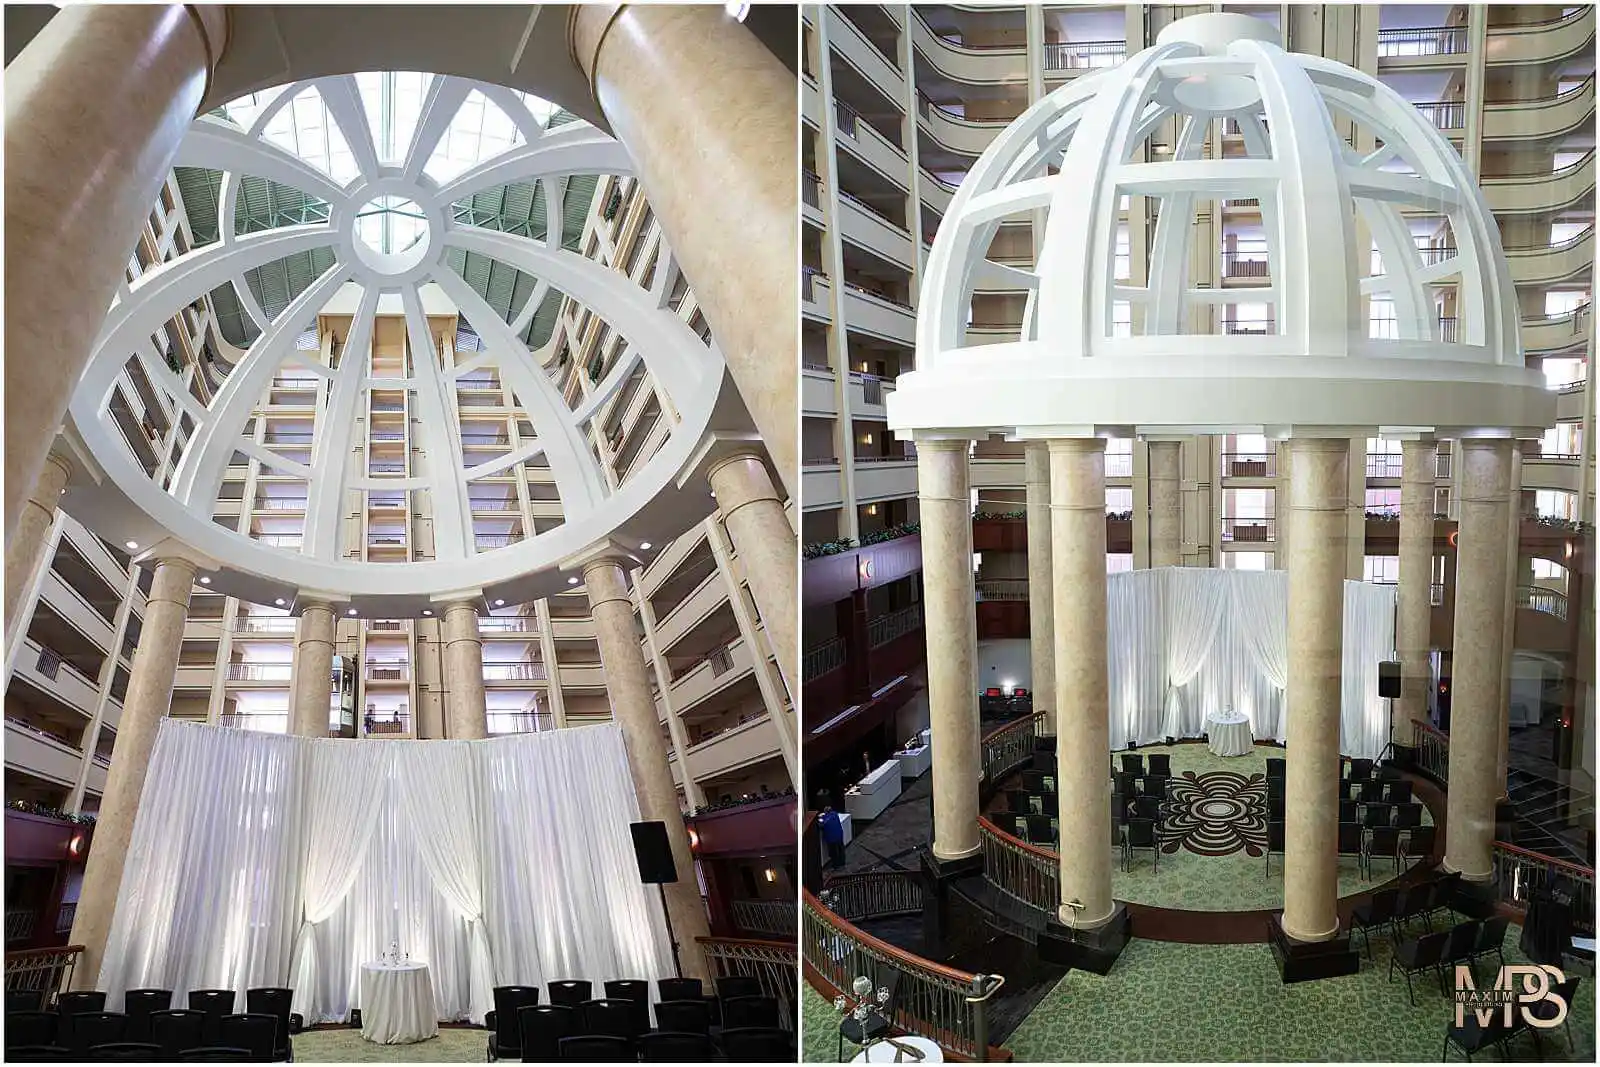 Elegant hotel atrium prepared for wedding ceremony.